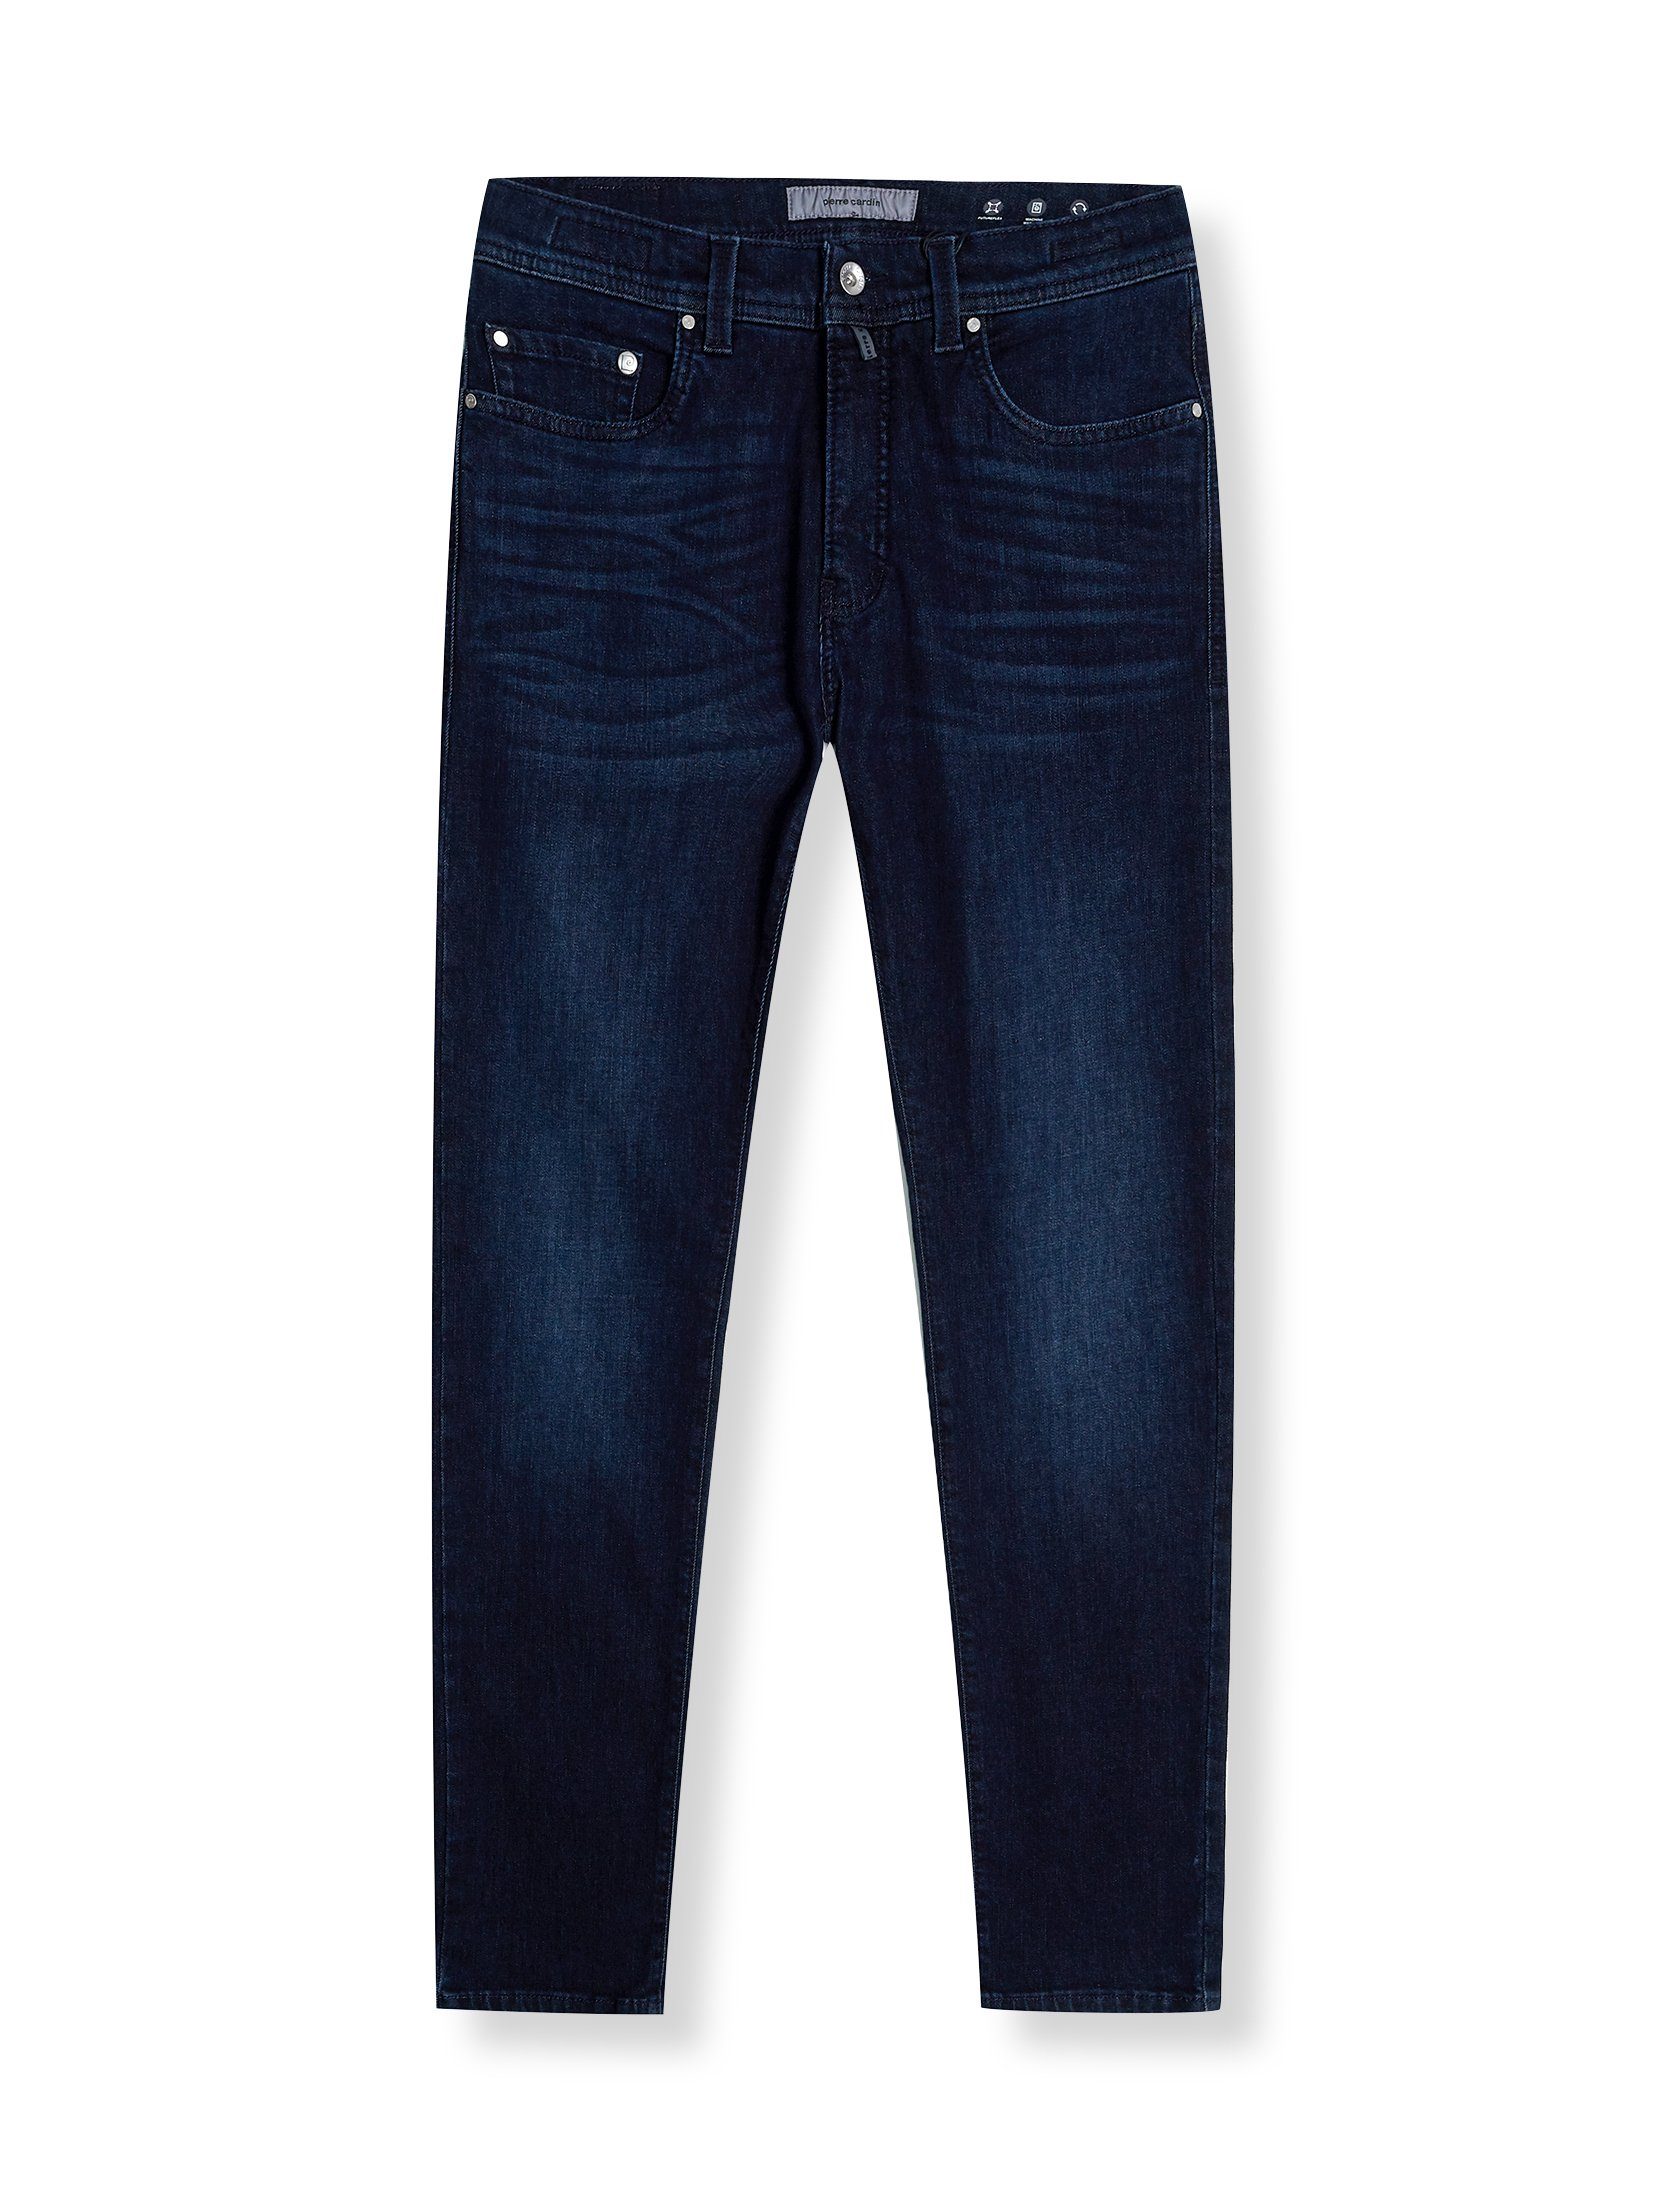 Cardin blue dark buffies 5-Pocket-Jeans Pierre used